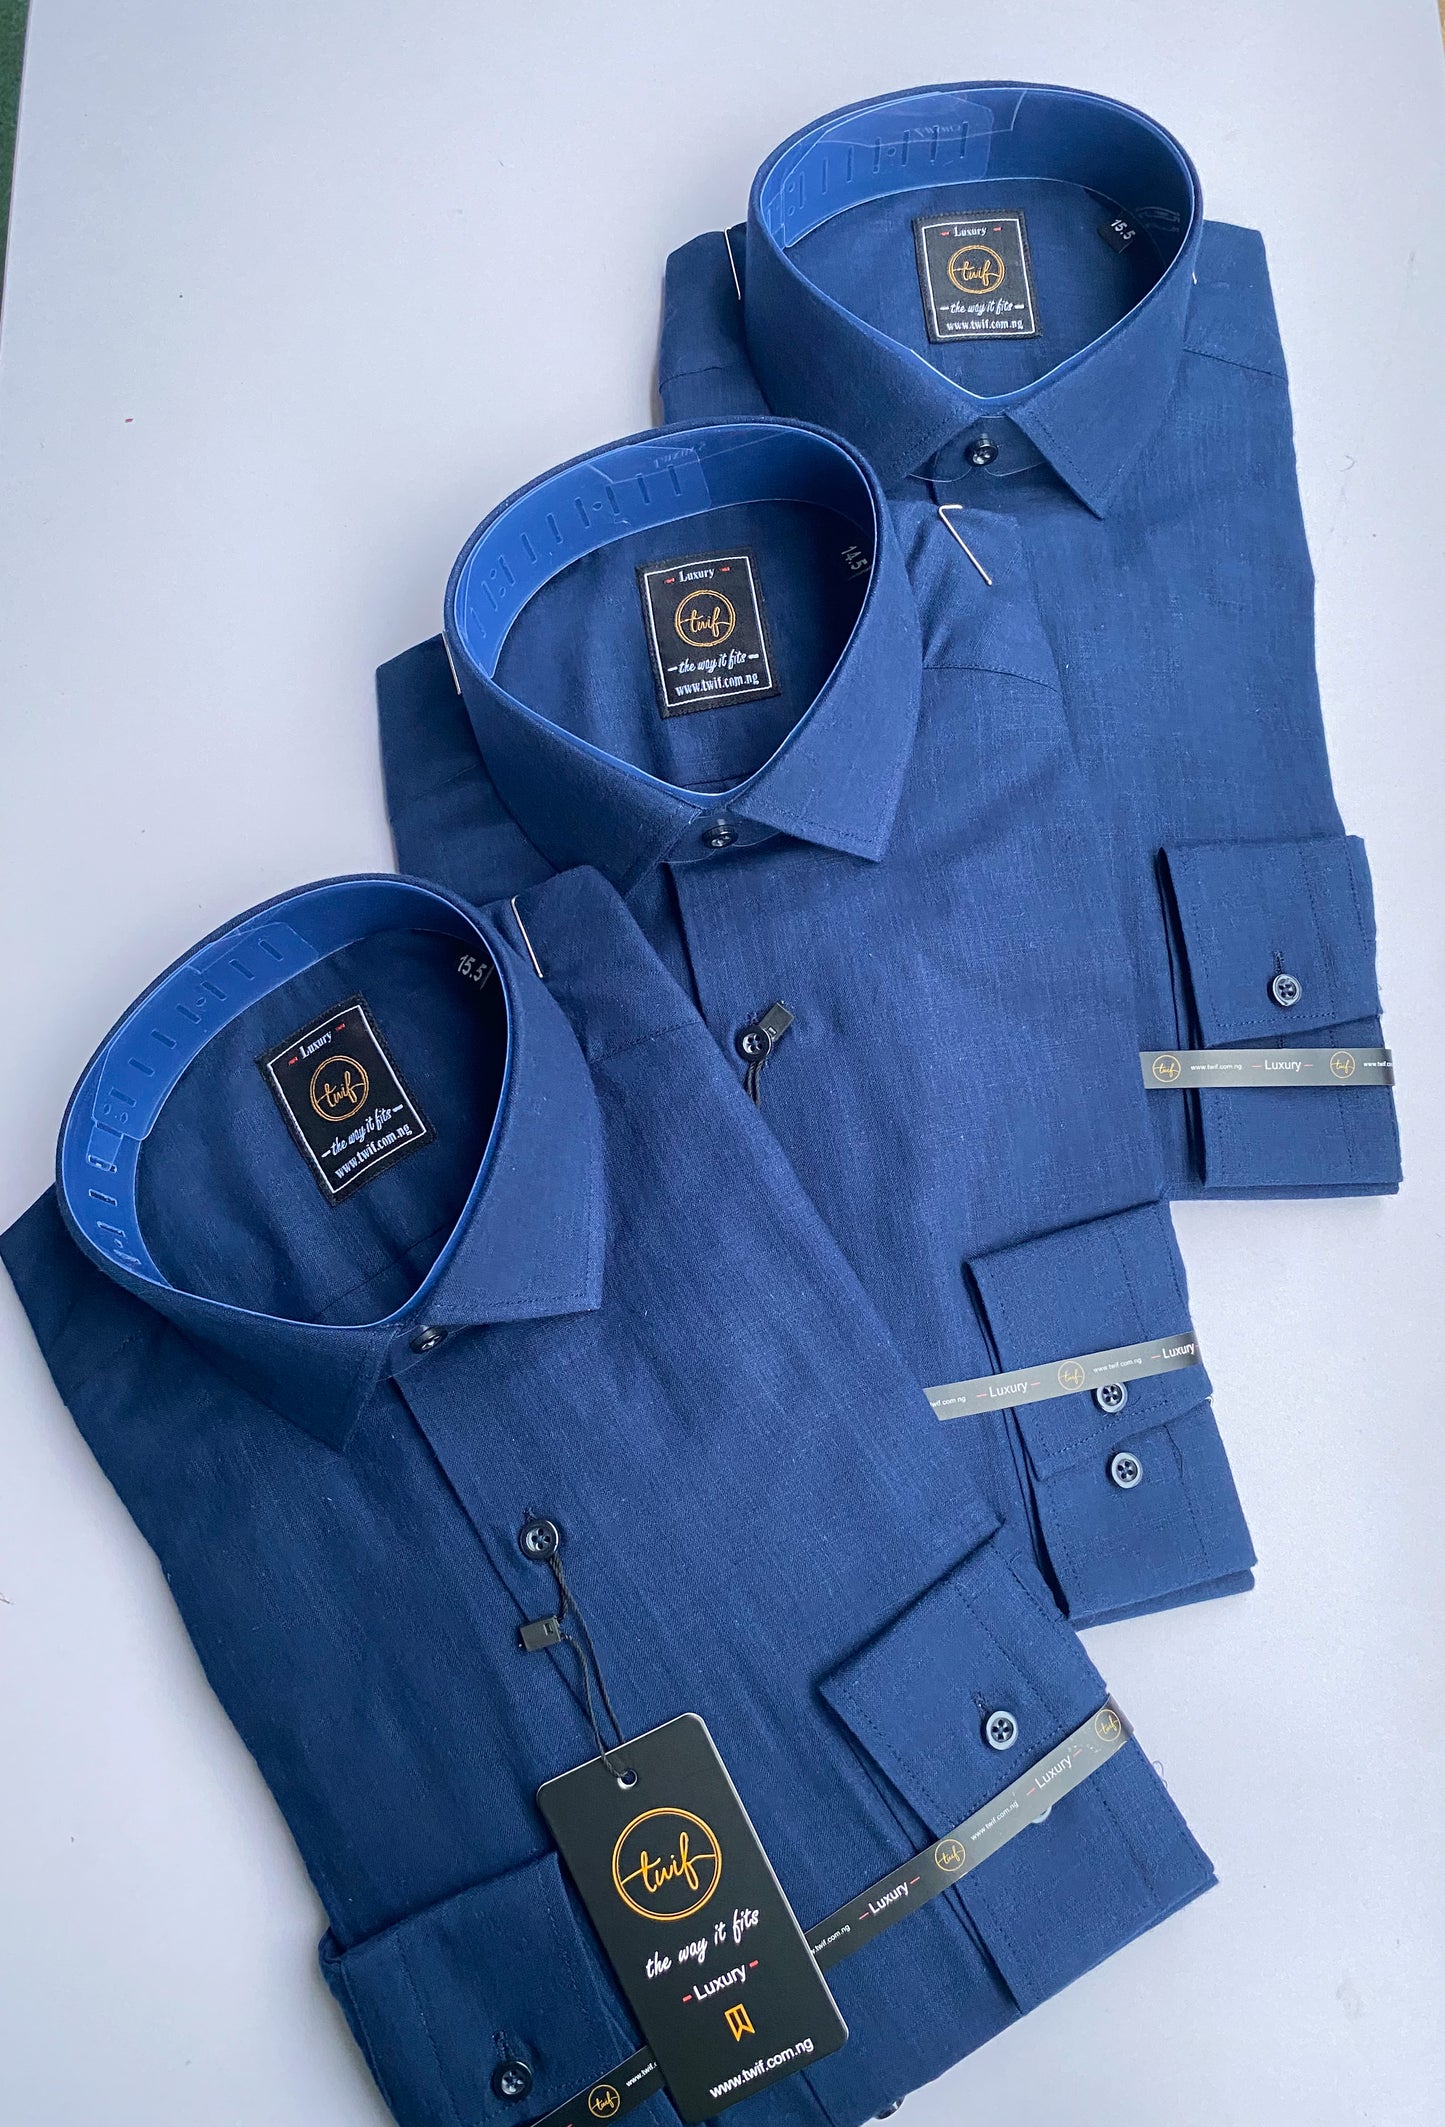 Navy blue linen shirt